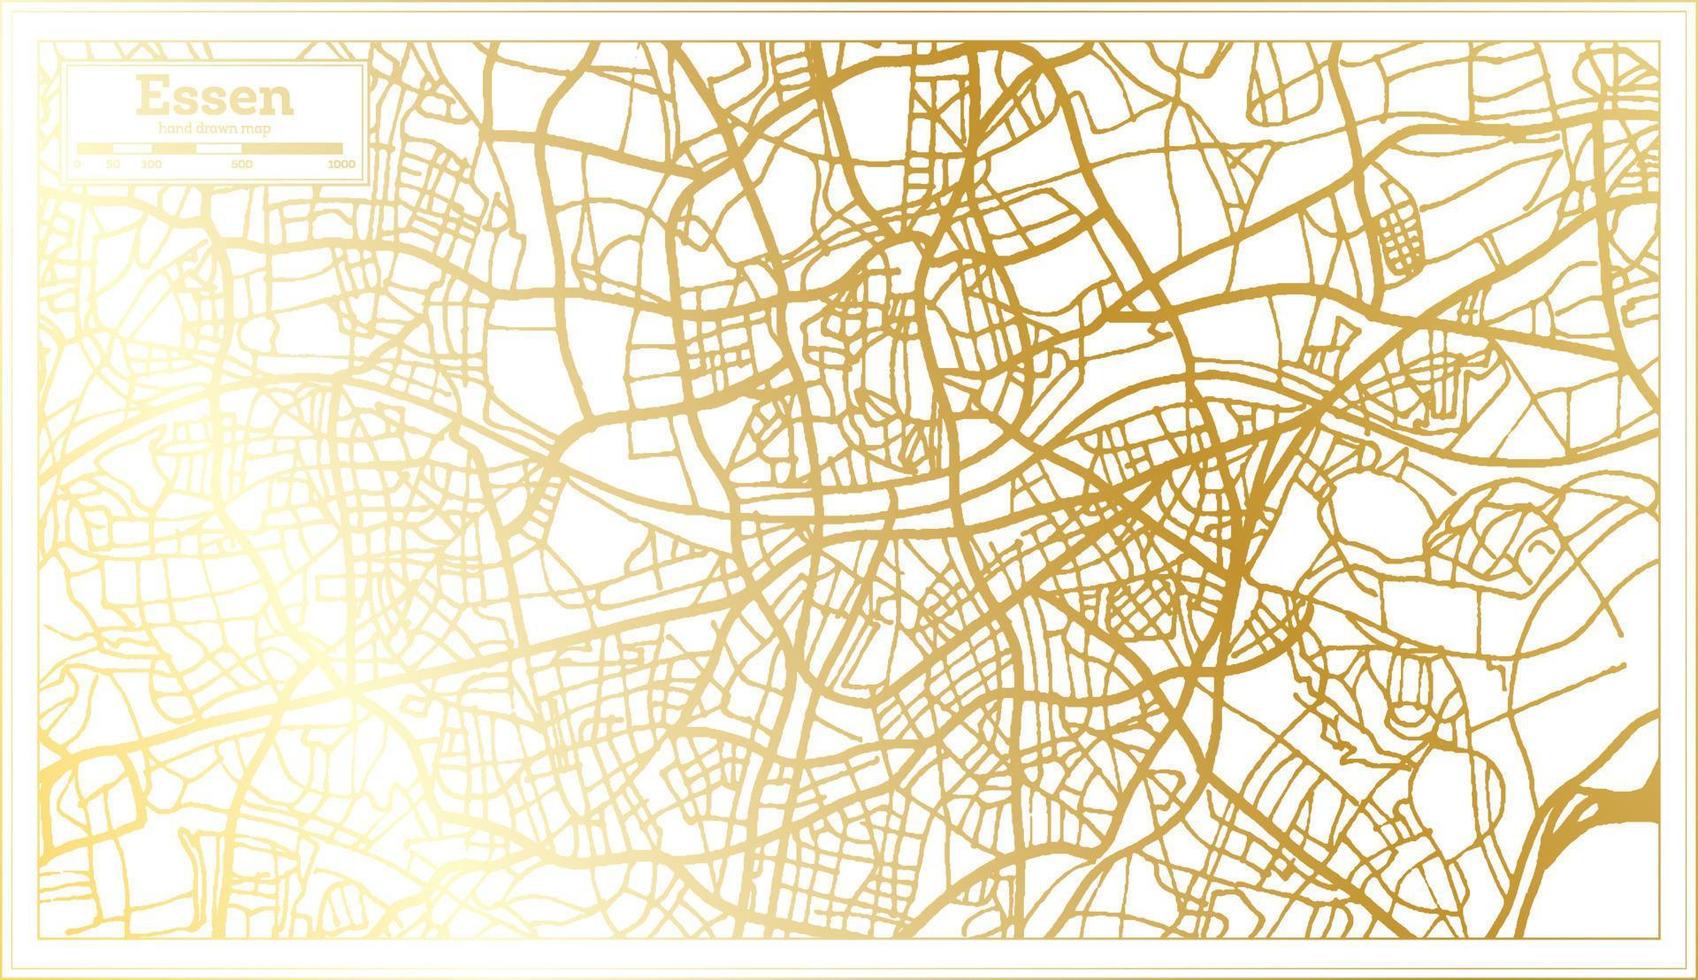 essen deutschland stadtplan im retro-stil in goldener farbe. Übersichtskarte. vektor